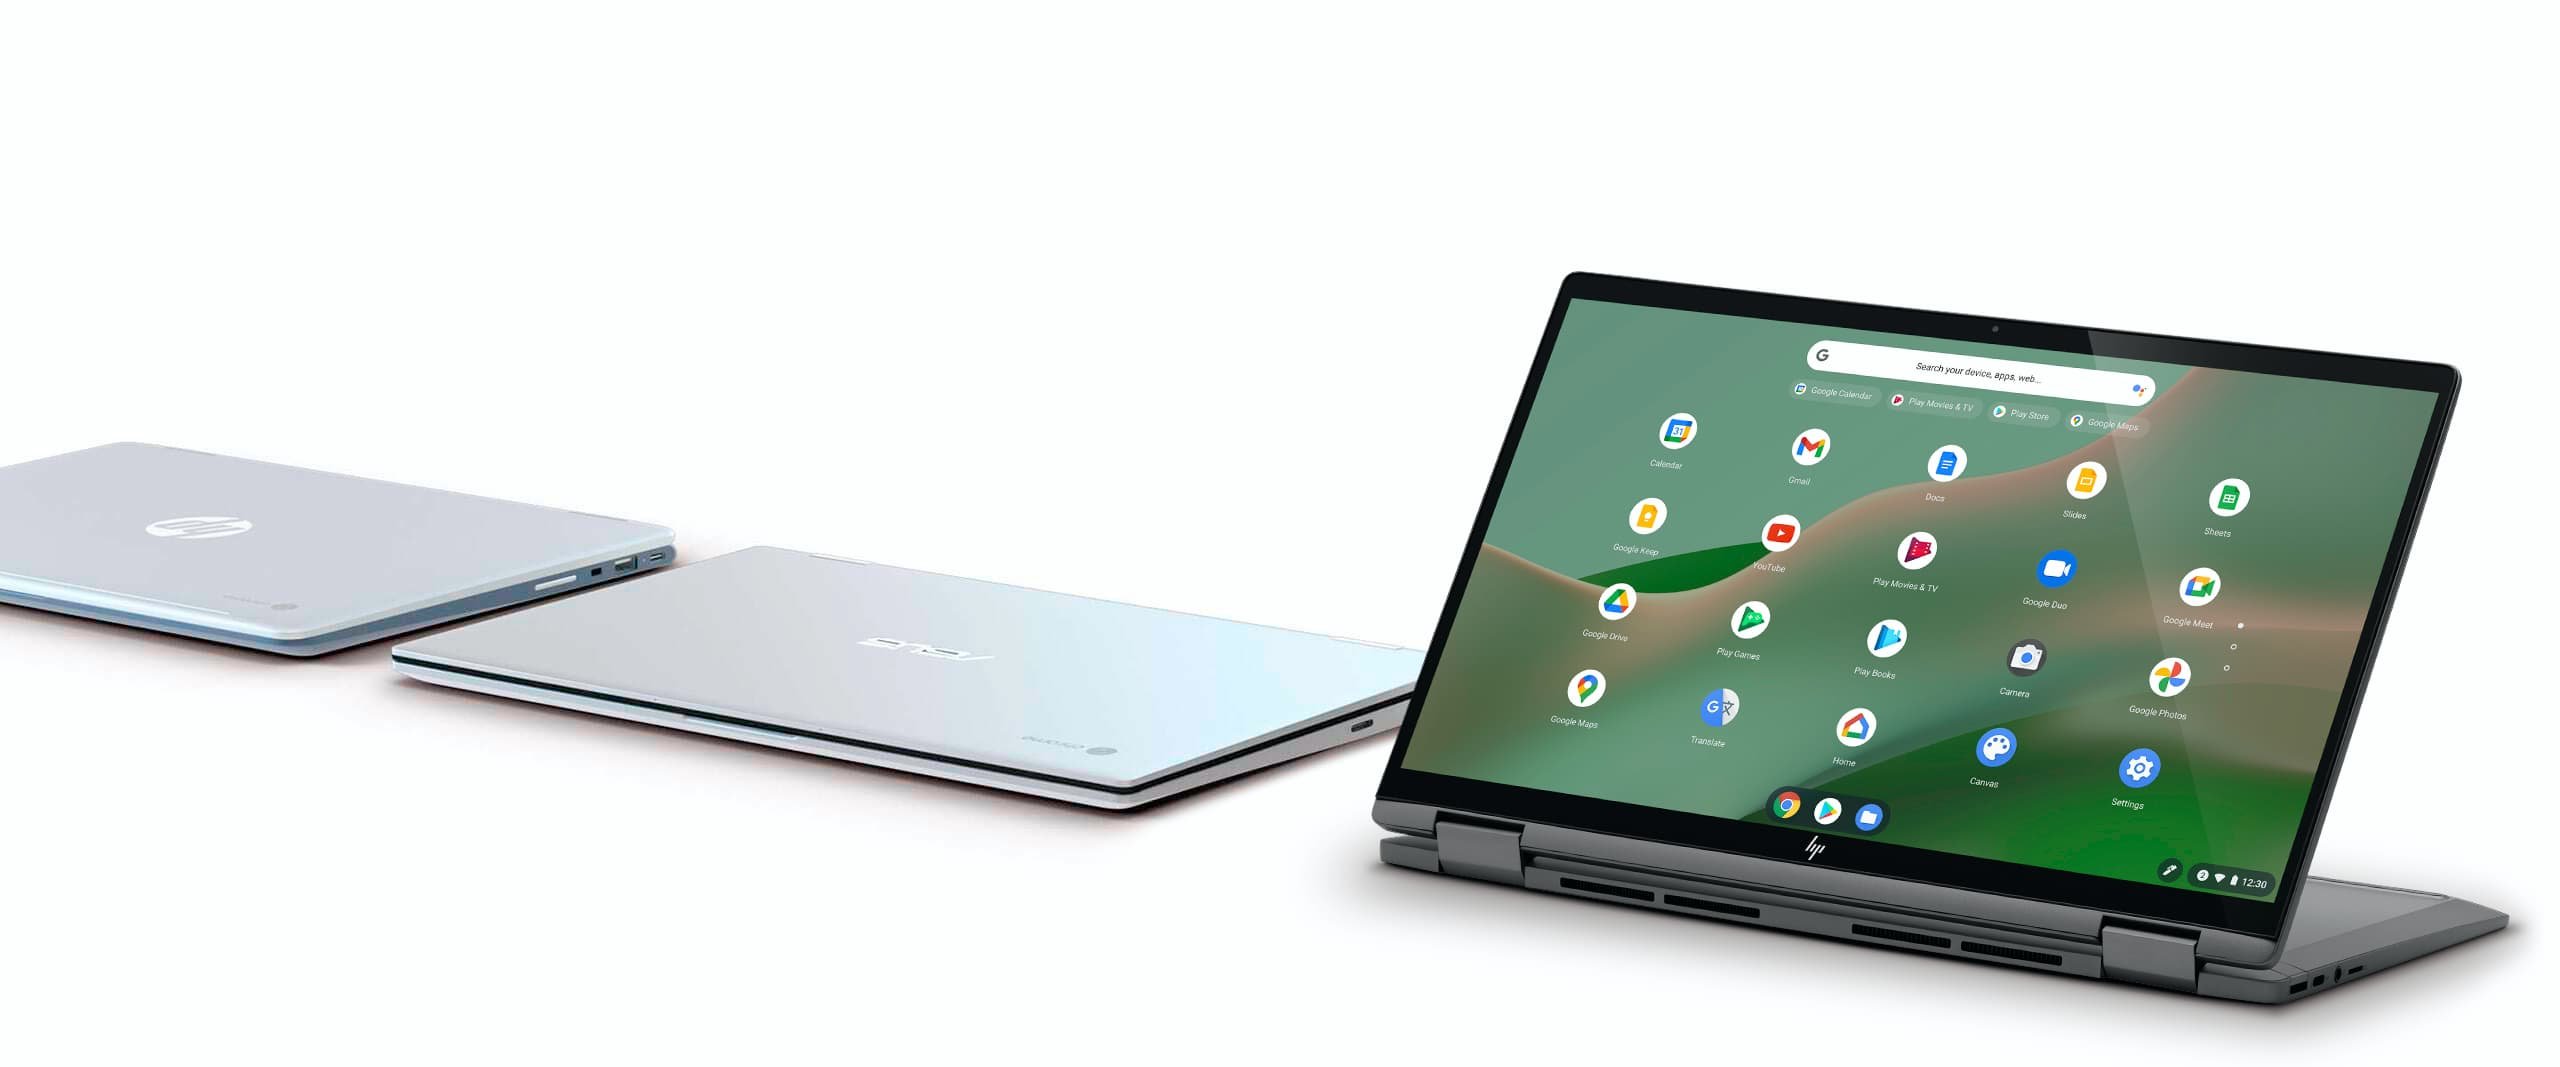  Google dezvoltă propriile procesoare pentru laptopuri şi tablete